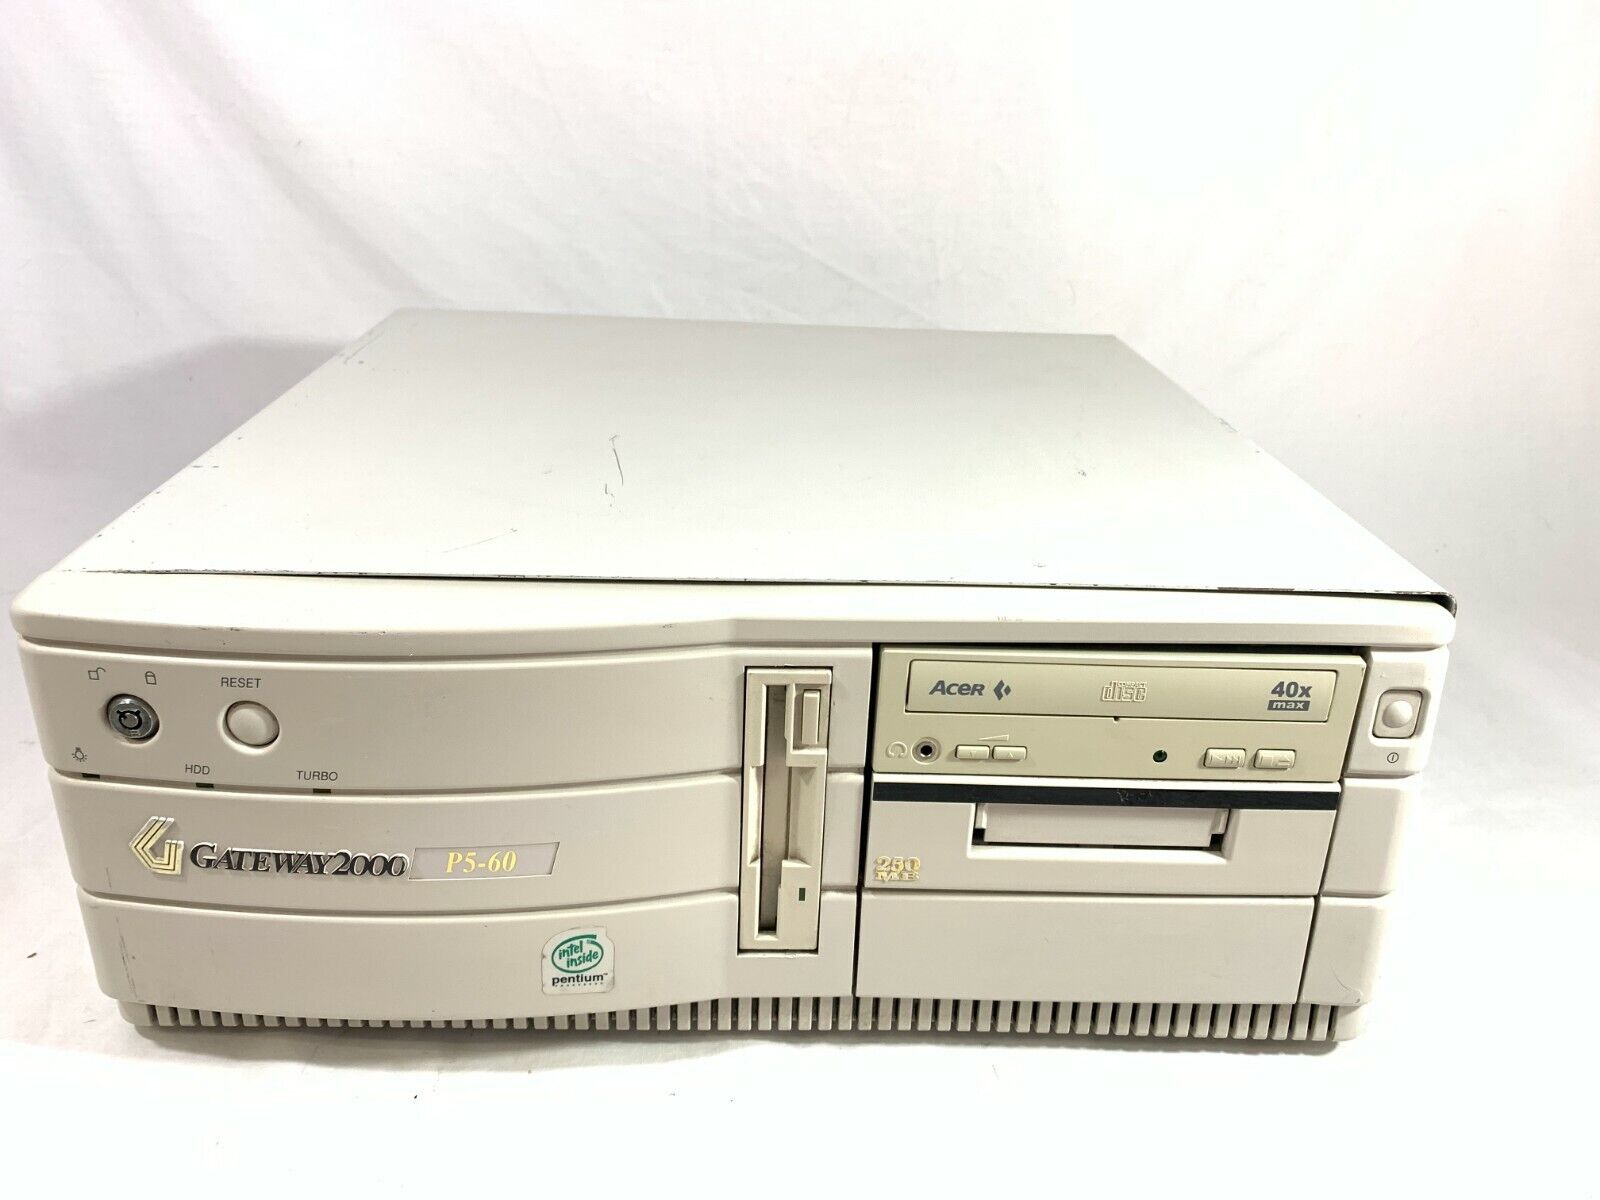 Vintage Gateway 2000 P5-60 Pentium MMX 166MHz Desktop Boots BABY AT